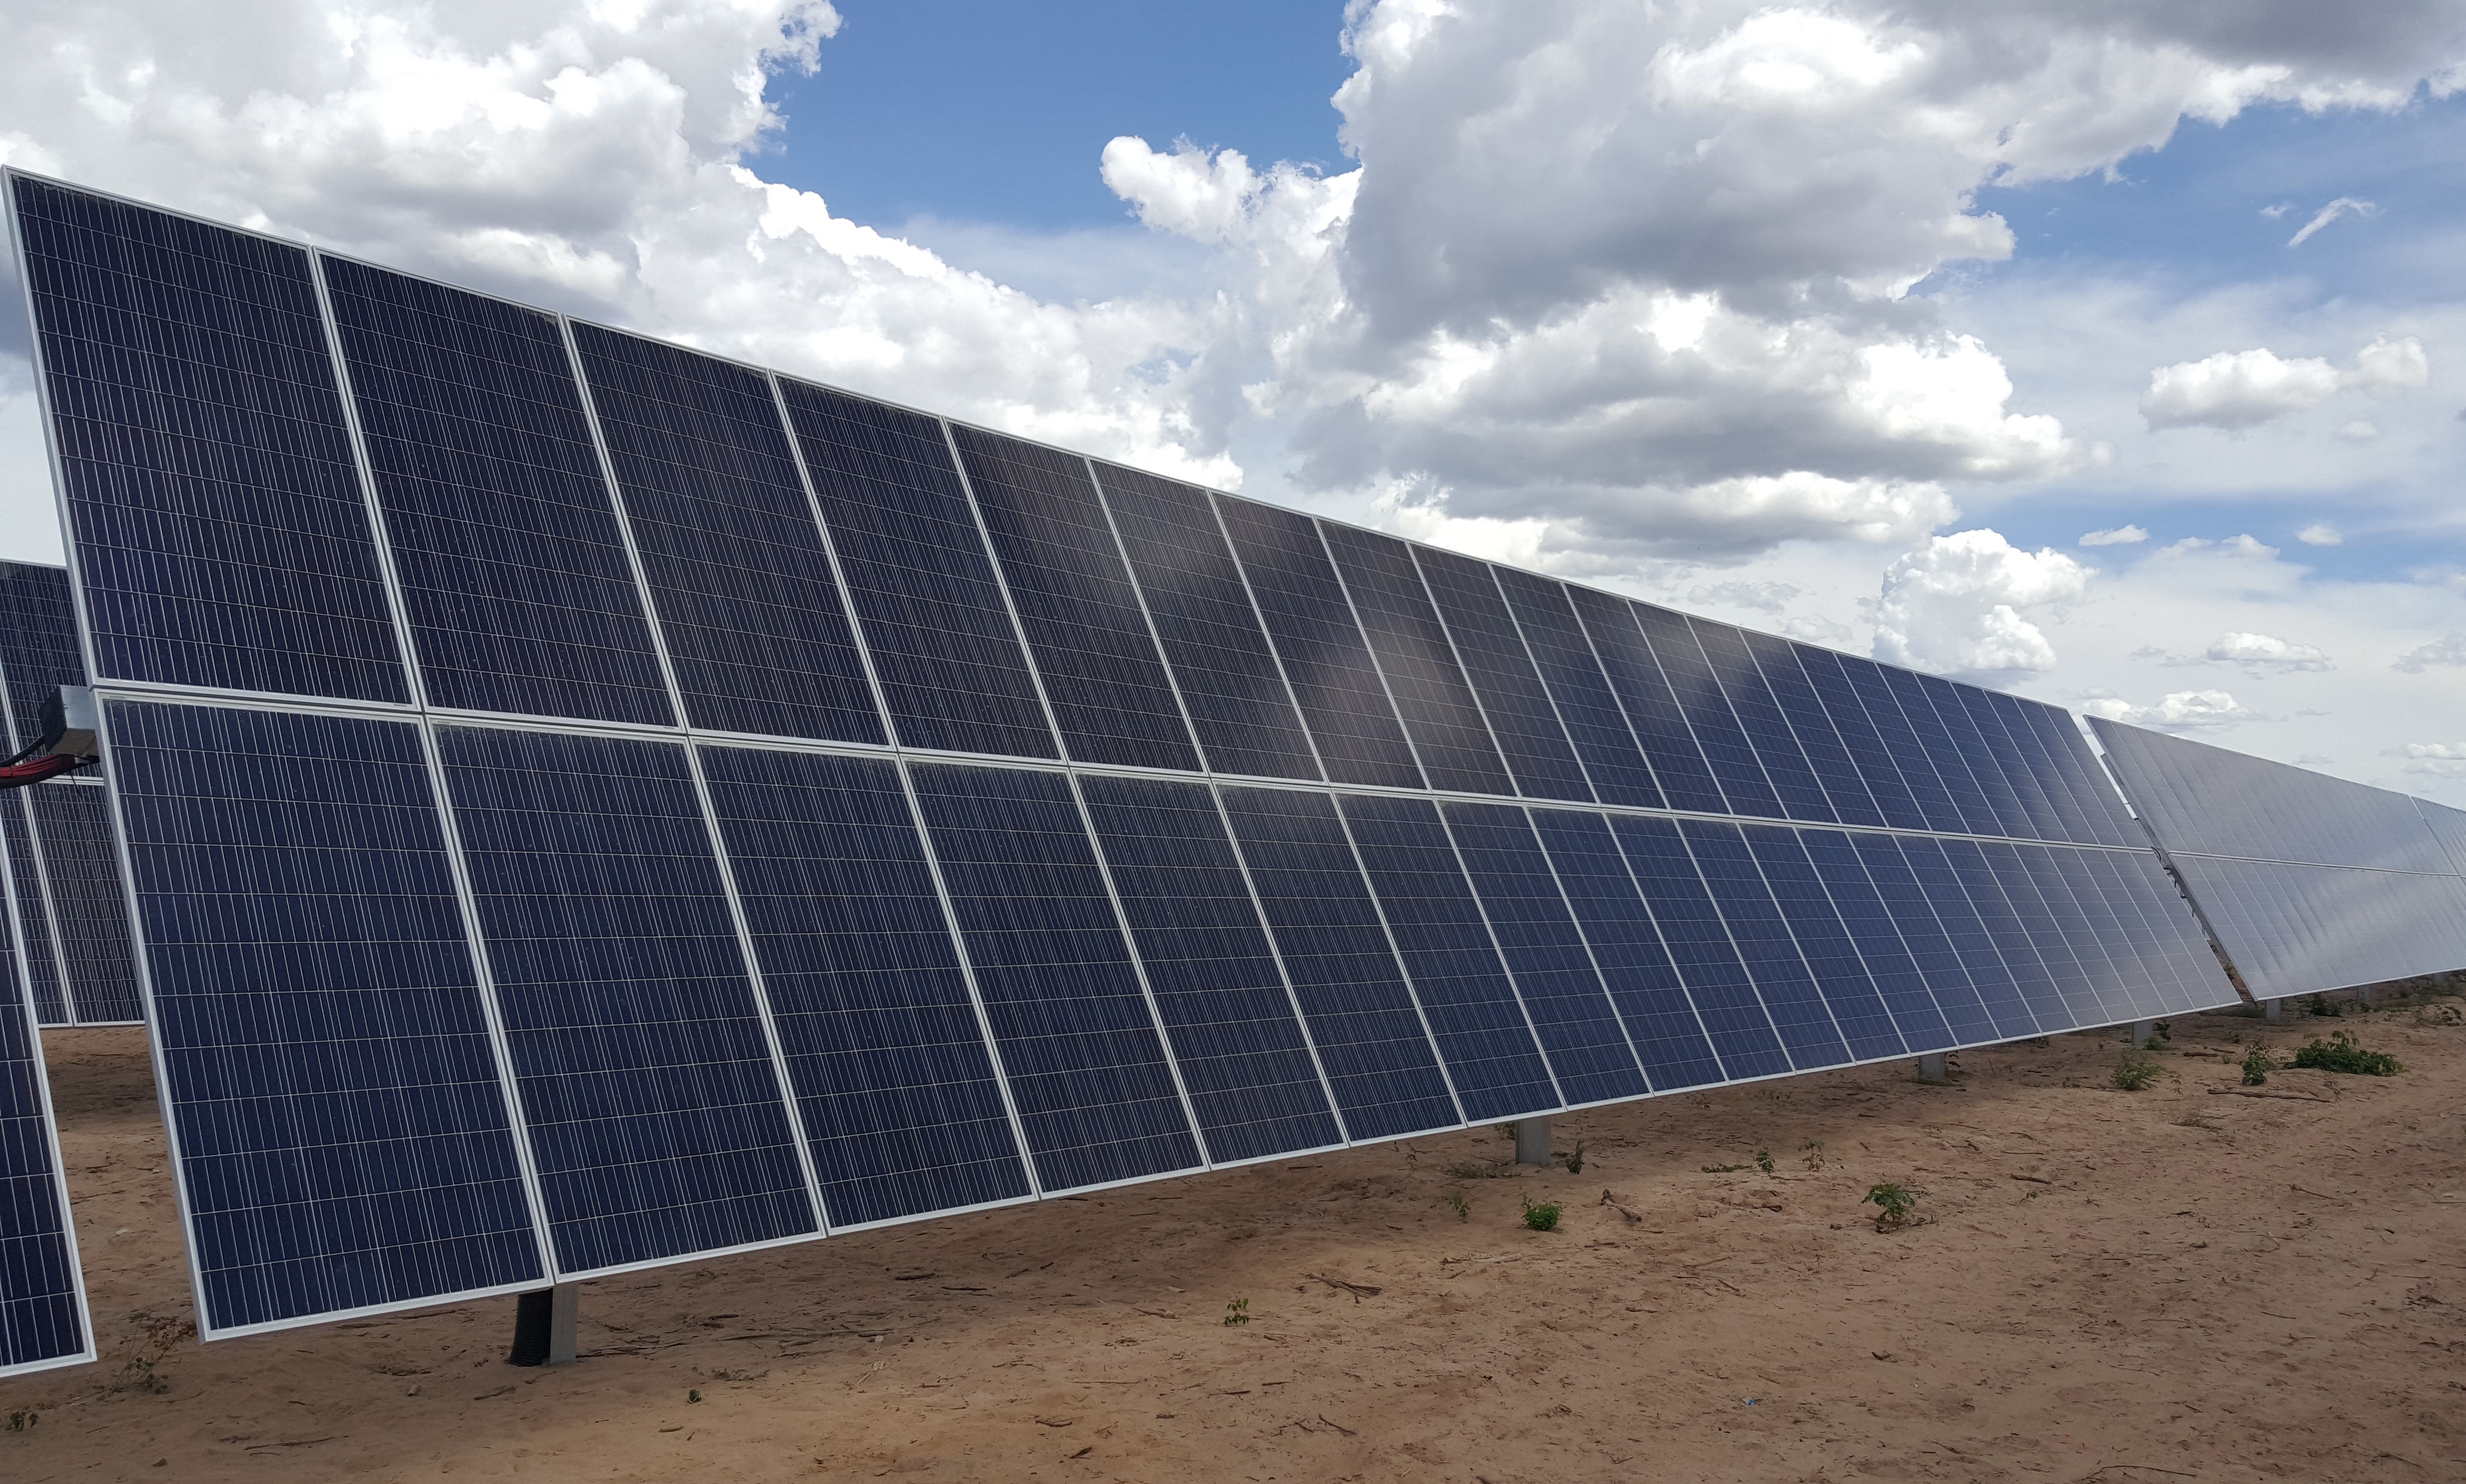 Ingresa a tramitación ambiental proyecto fotovoltaico de 24 MW en Constitución